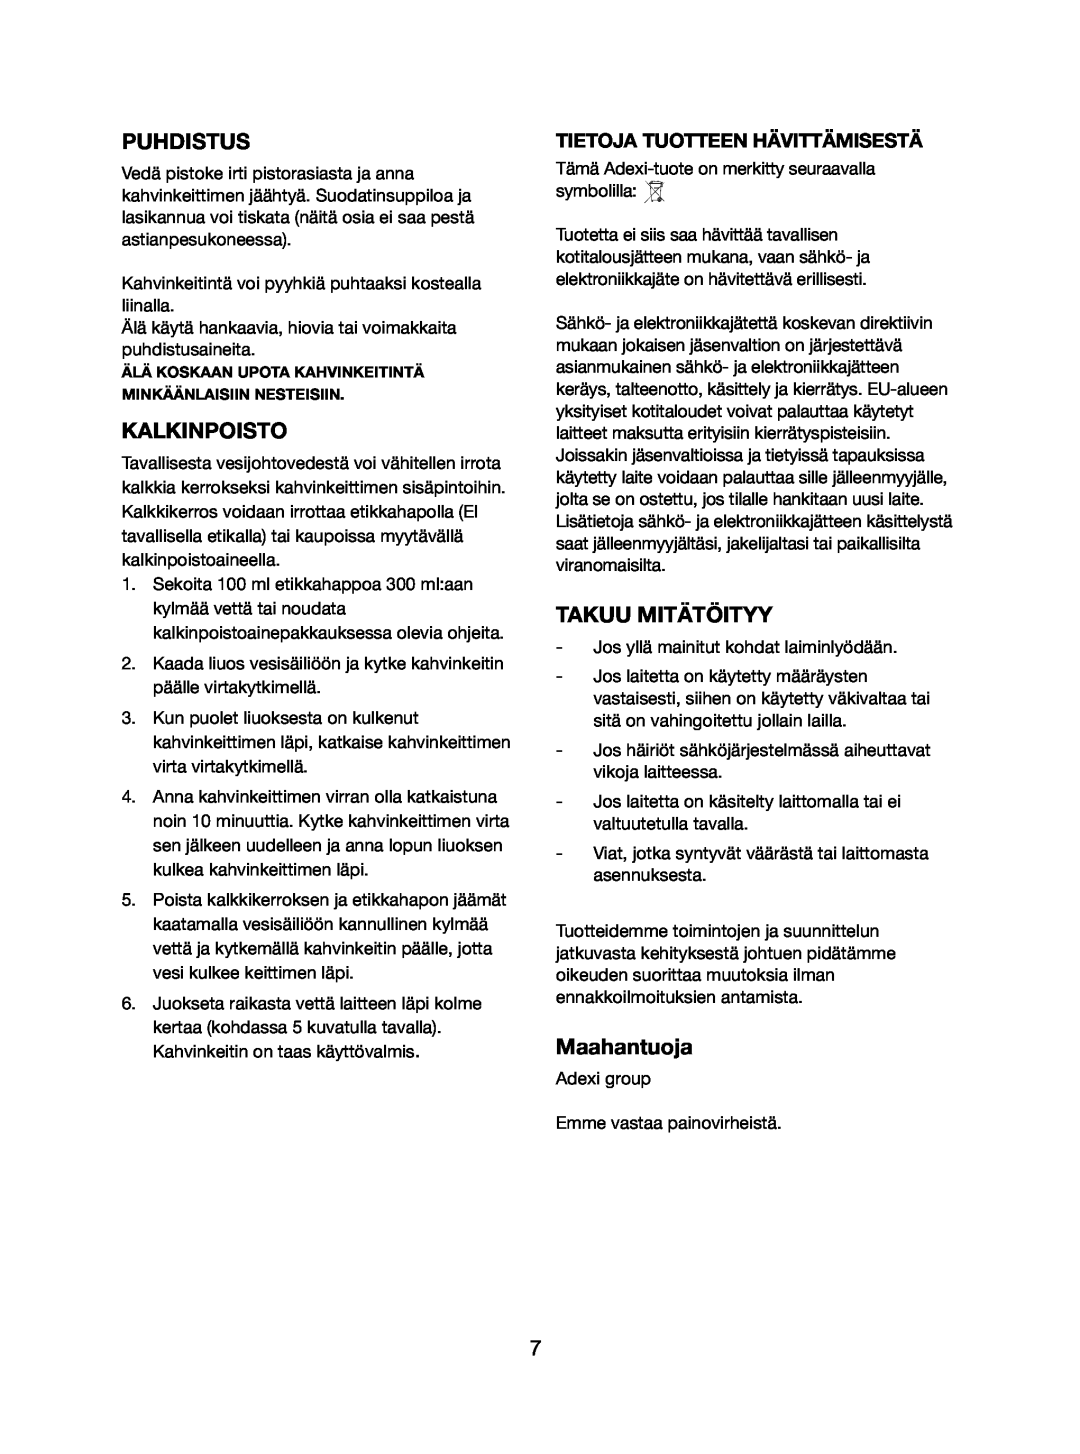 Melissa 745-112 manual Puhdistus, Kalkinpoisto, Takuu Mitätöityy, Maahantuoja, Tietoja Tuotteen Hävittämisestä 